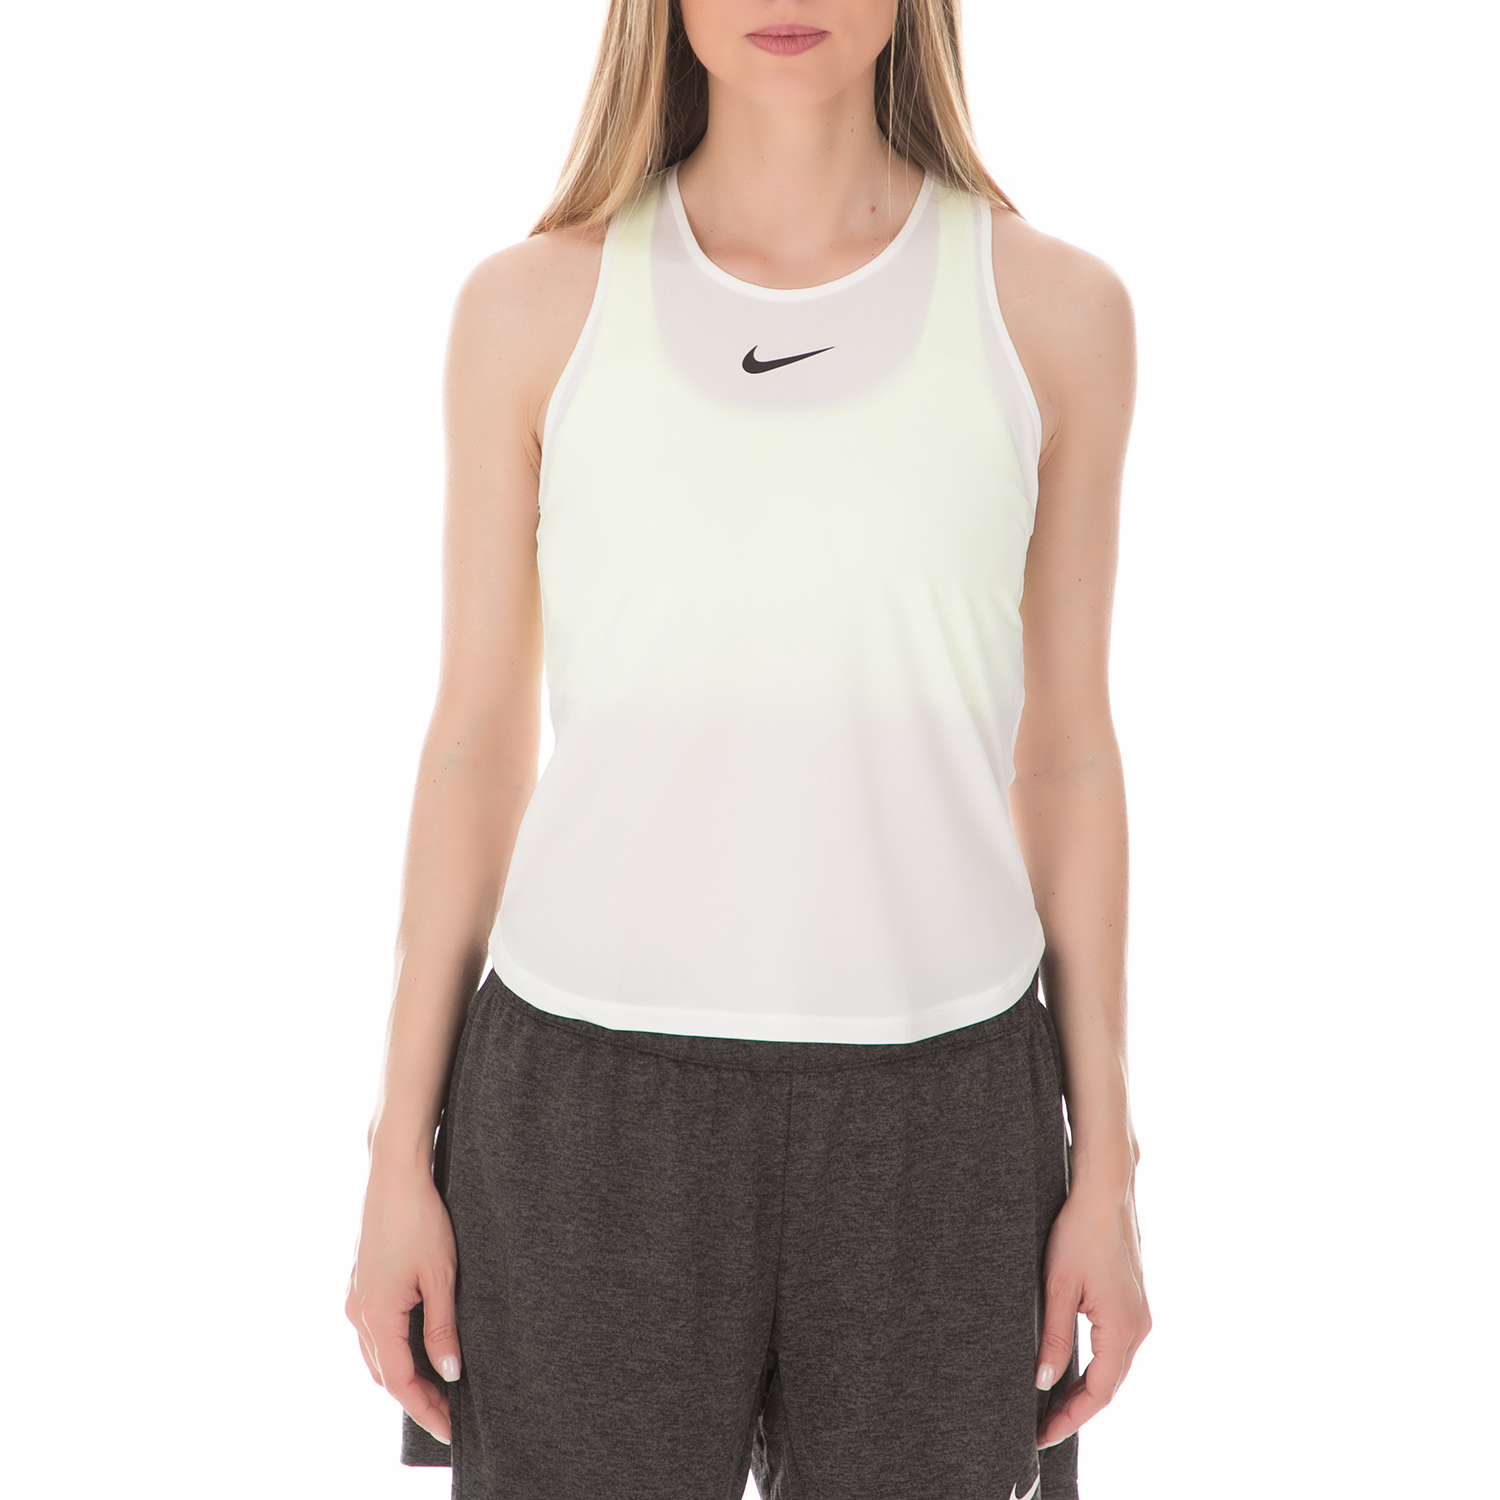 NIKE - Γυναικείο αθλητικό φανελάκι Nike Dry Slam λευκό Γυναικεία/Ρούχα/Αθλητικά/T-shirt-Τοπ